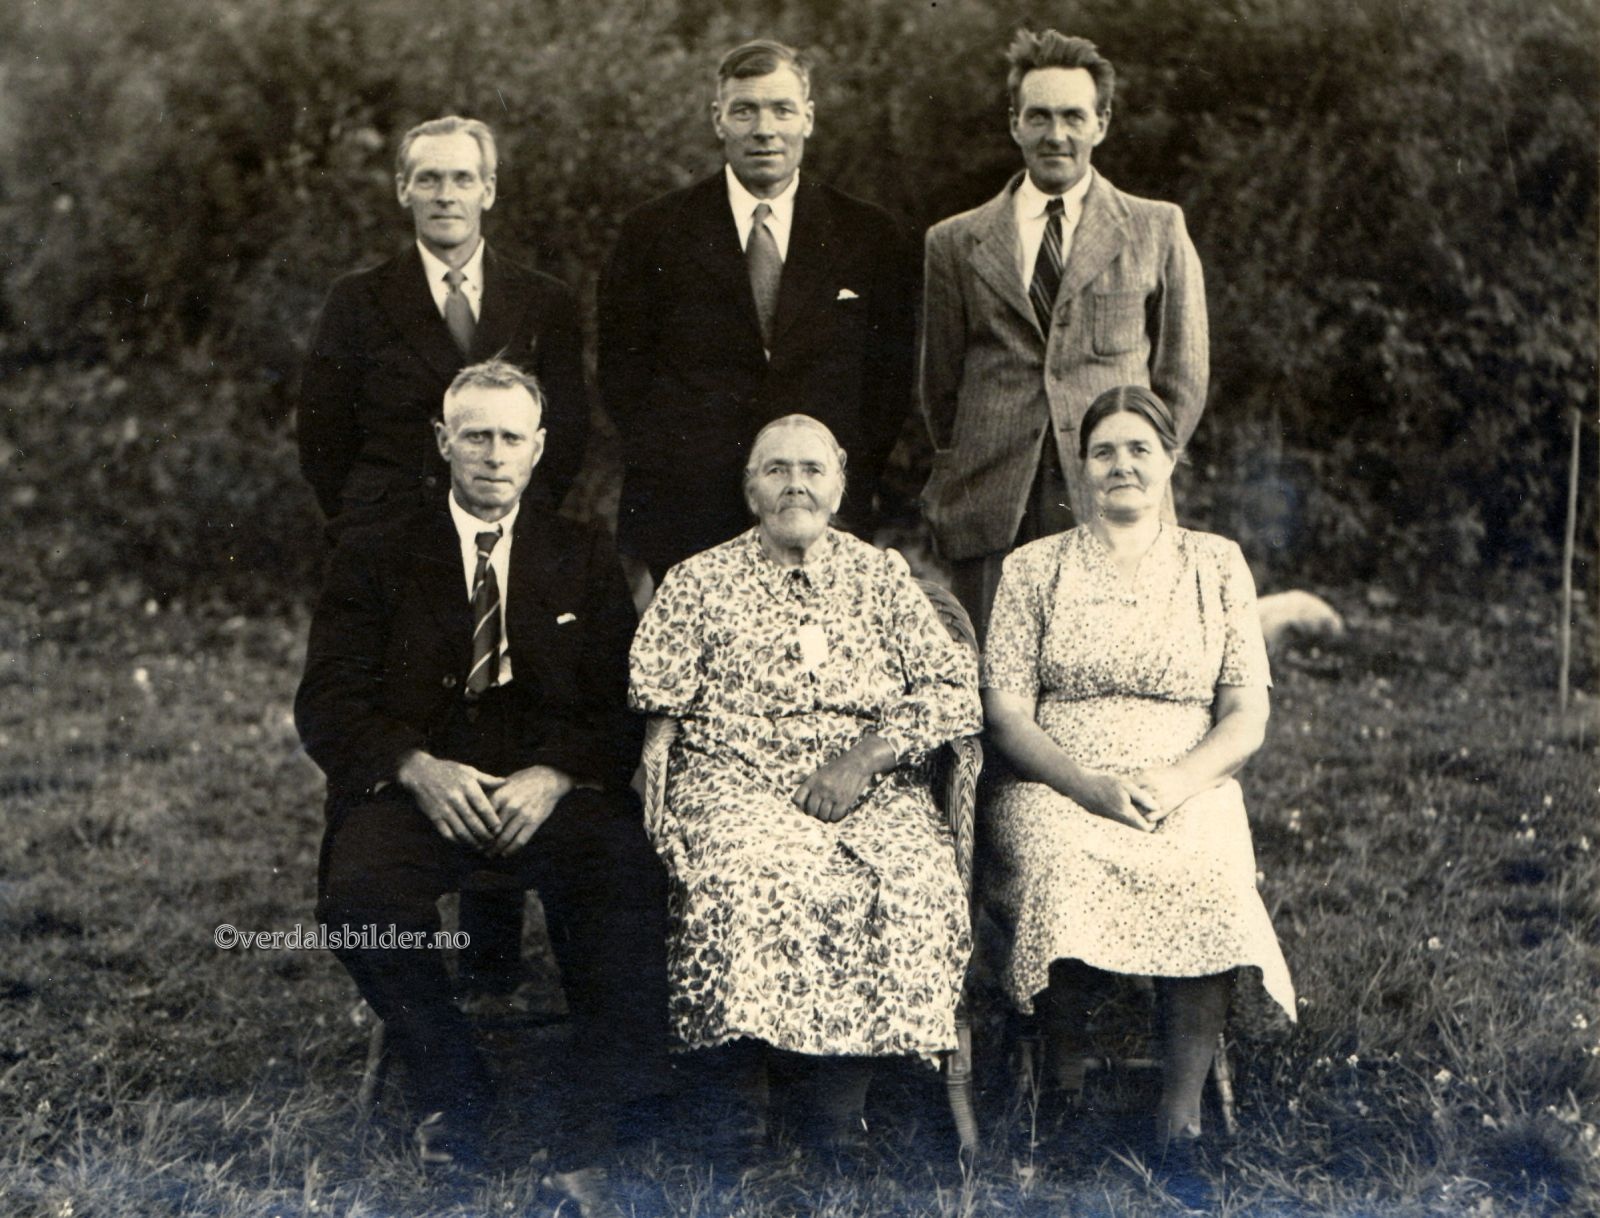 Bildet er tatt i anledning feiringen av  Karolines 80-årsdag hos sønnen Kåre i 1950. Utlånt av Annar Skjerve. Hjelp med navn, Svein Guddingsmo.